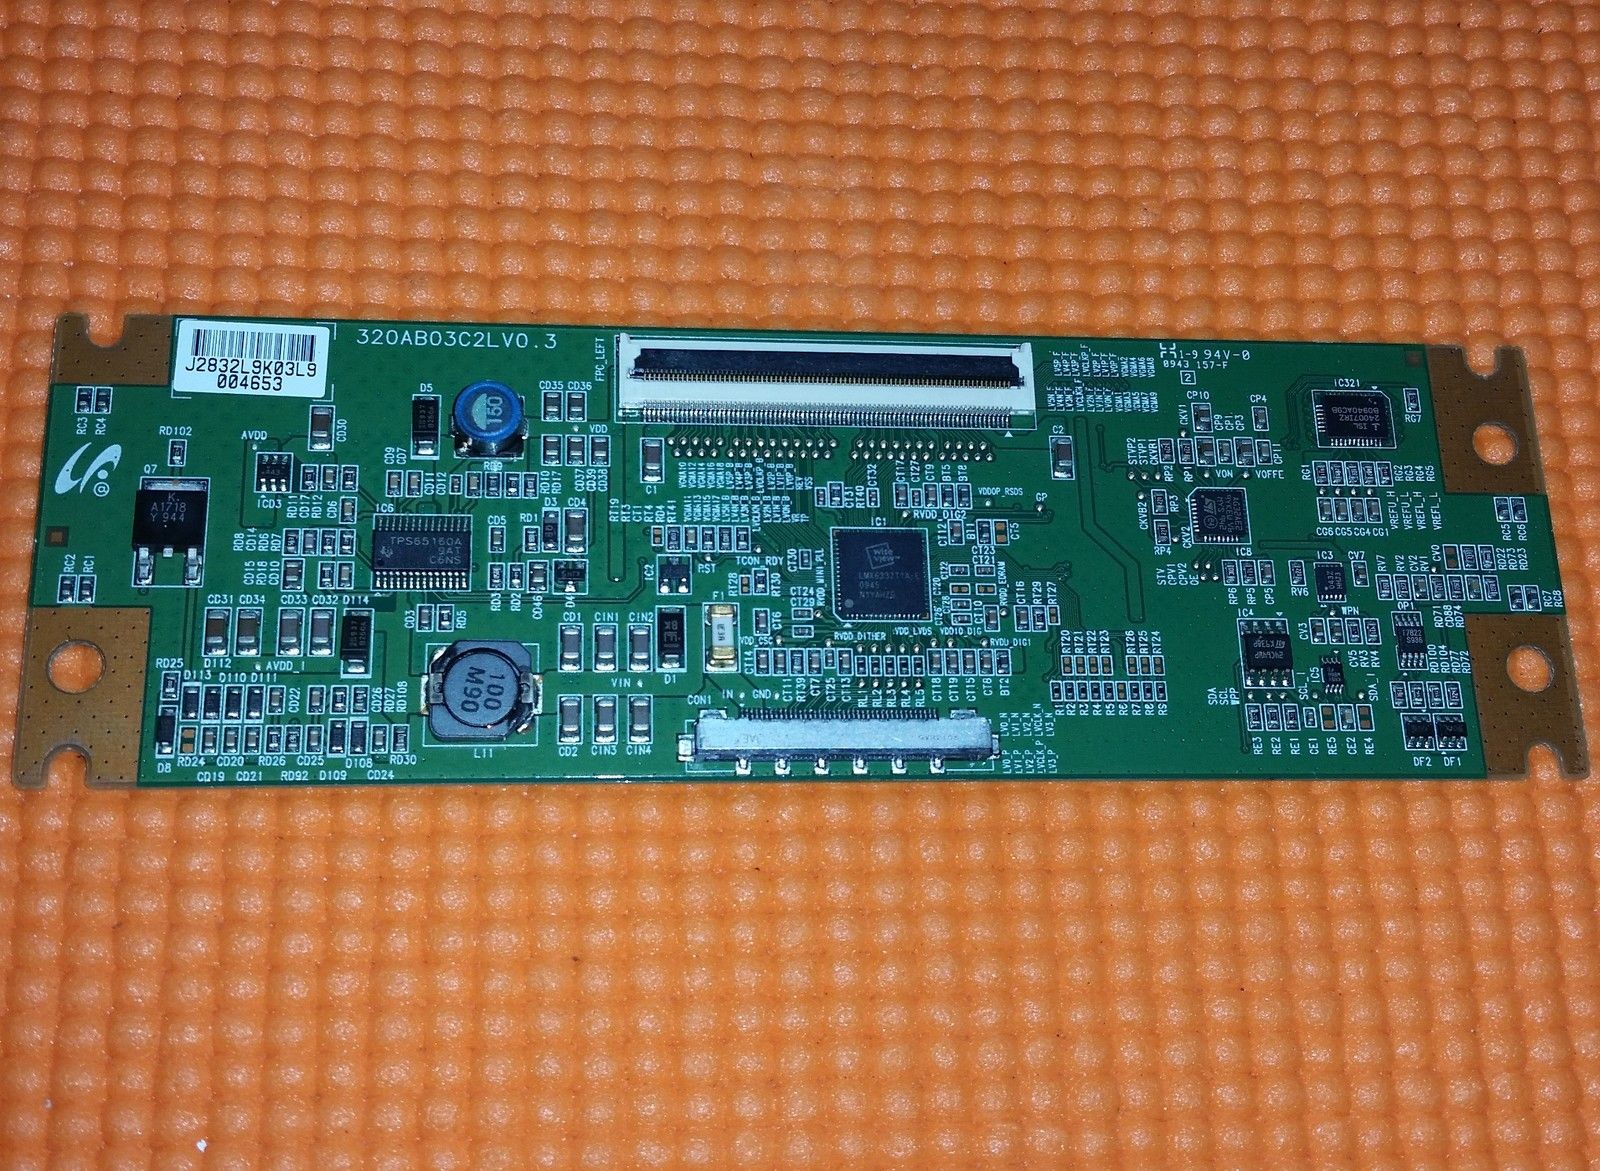 T-CON LVDS BOARD FOR SONY KDL-32S5500 32" LCD TV 320AB03C2LV0.3